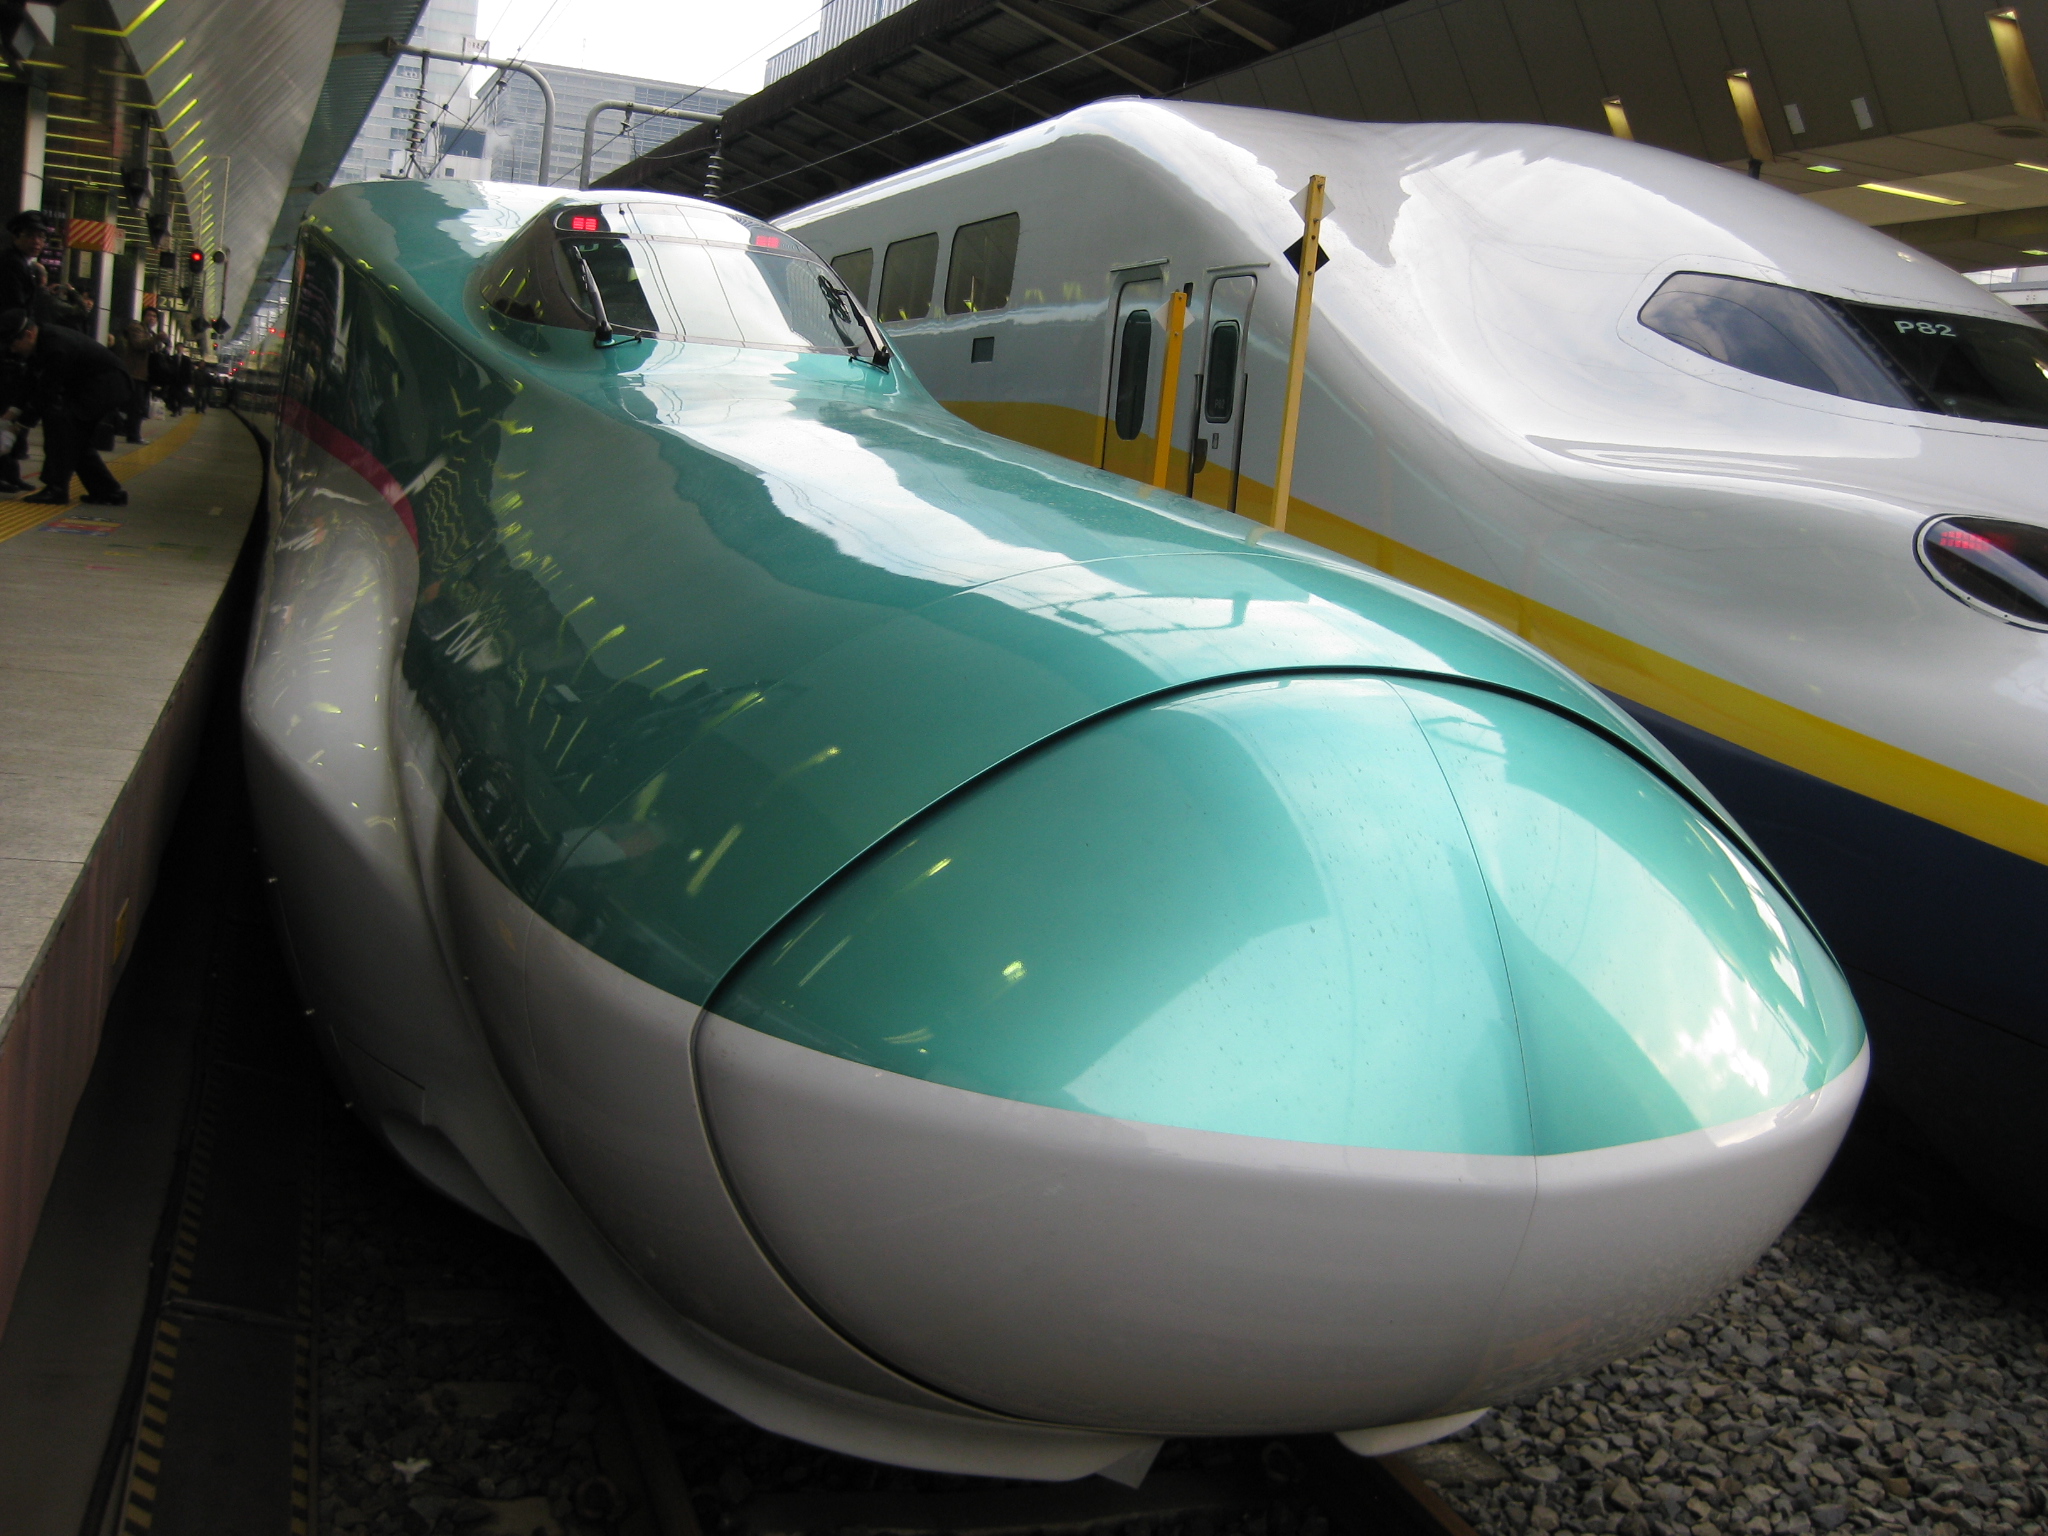 東北新幹線 はやぶさ 山口県 総合ビルメンテナンス ビークルーエッセのブログ